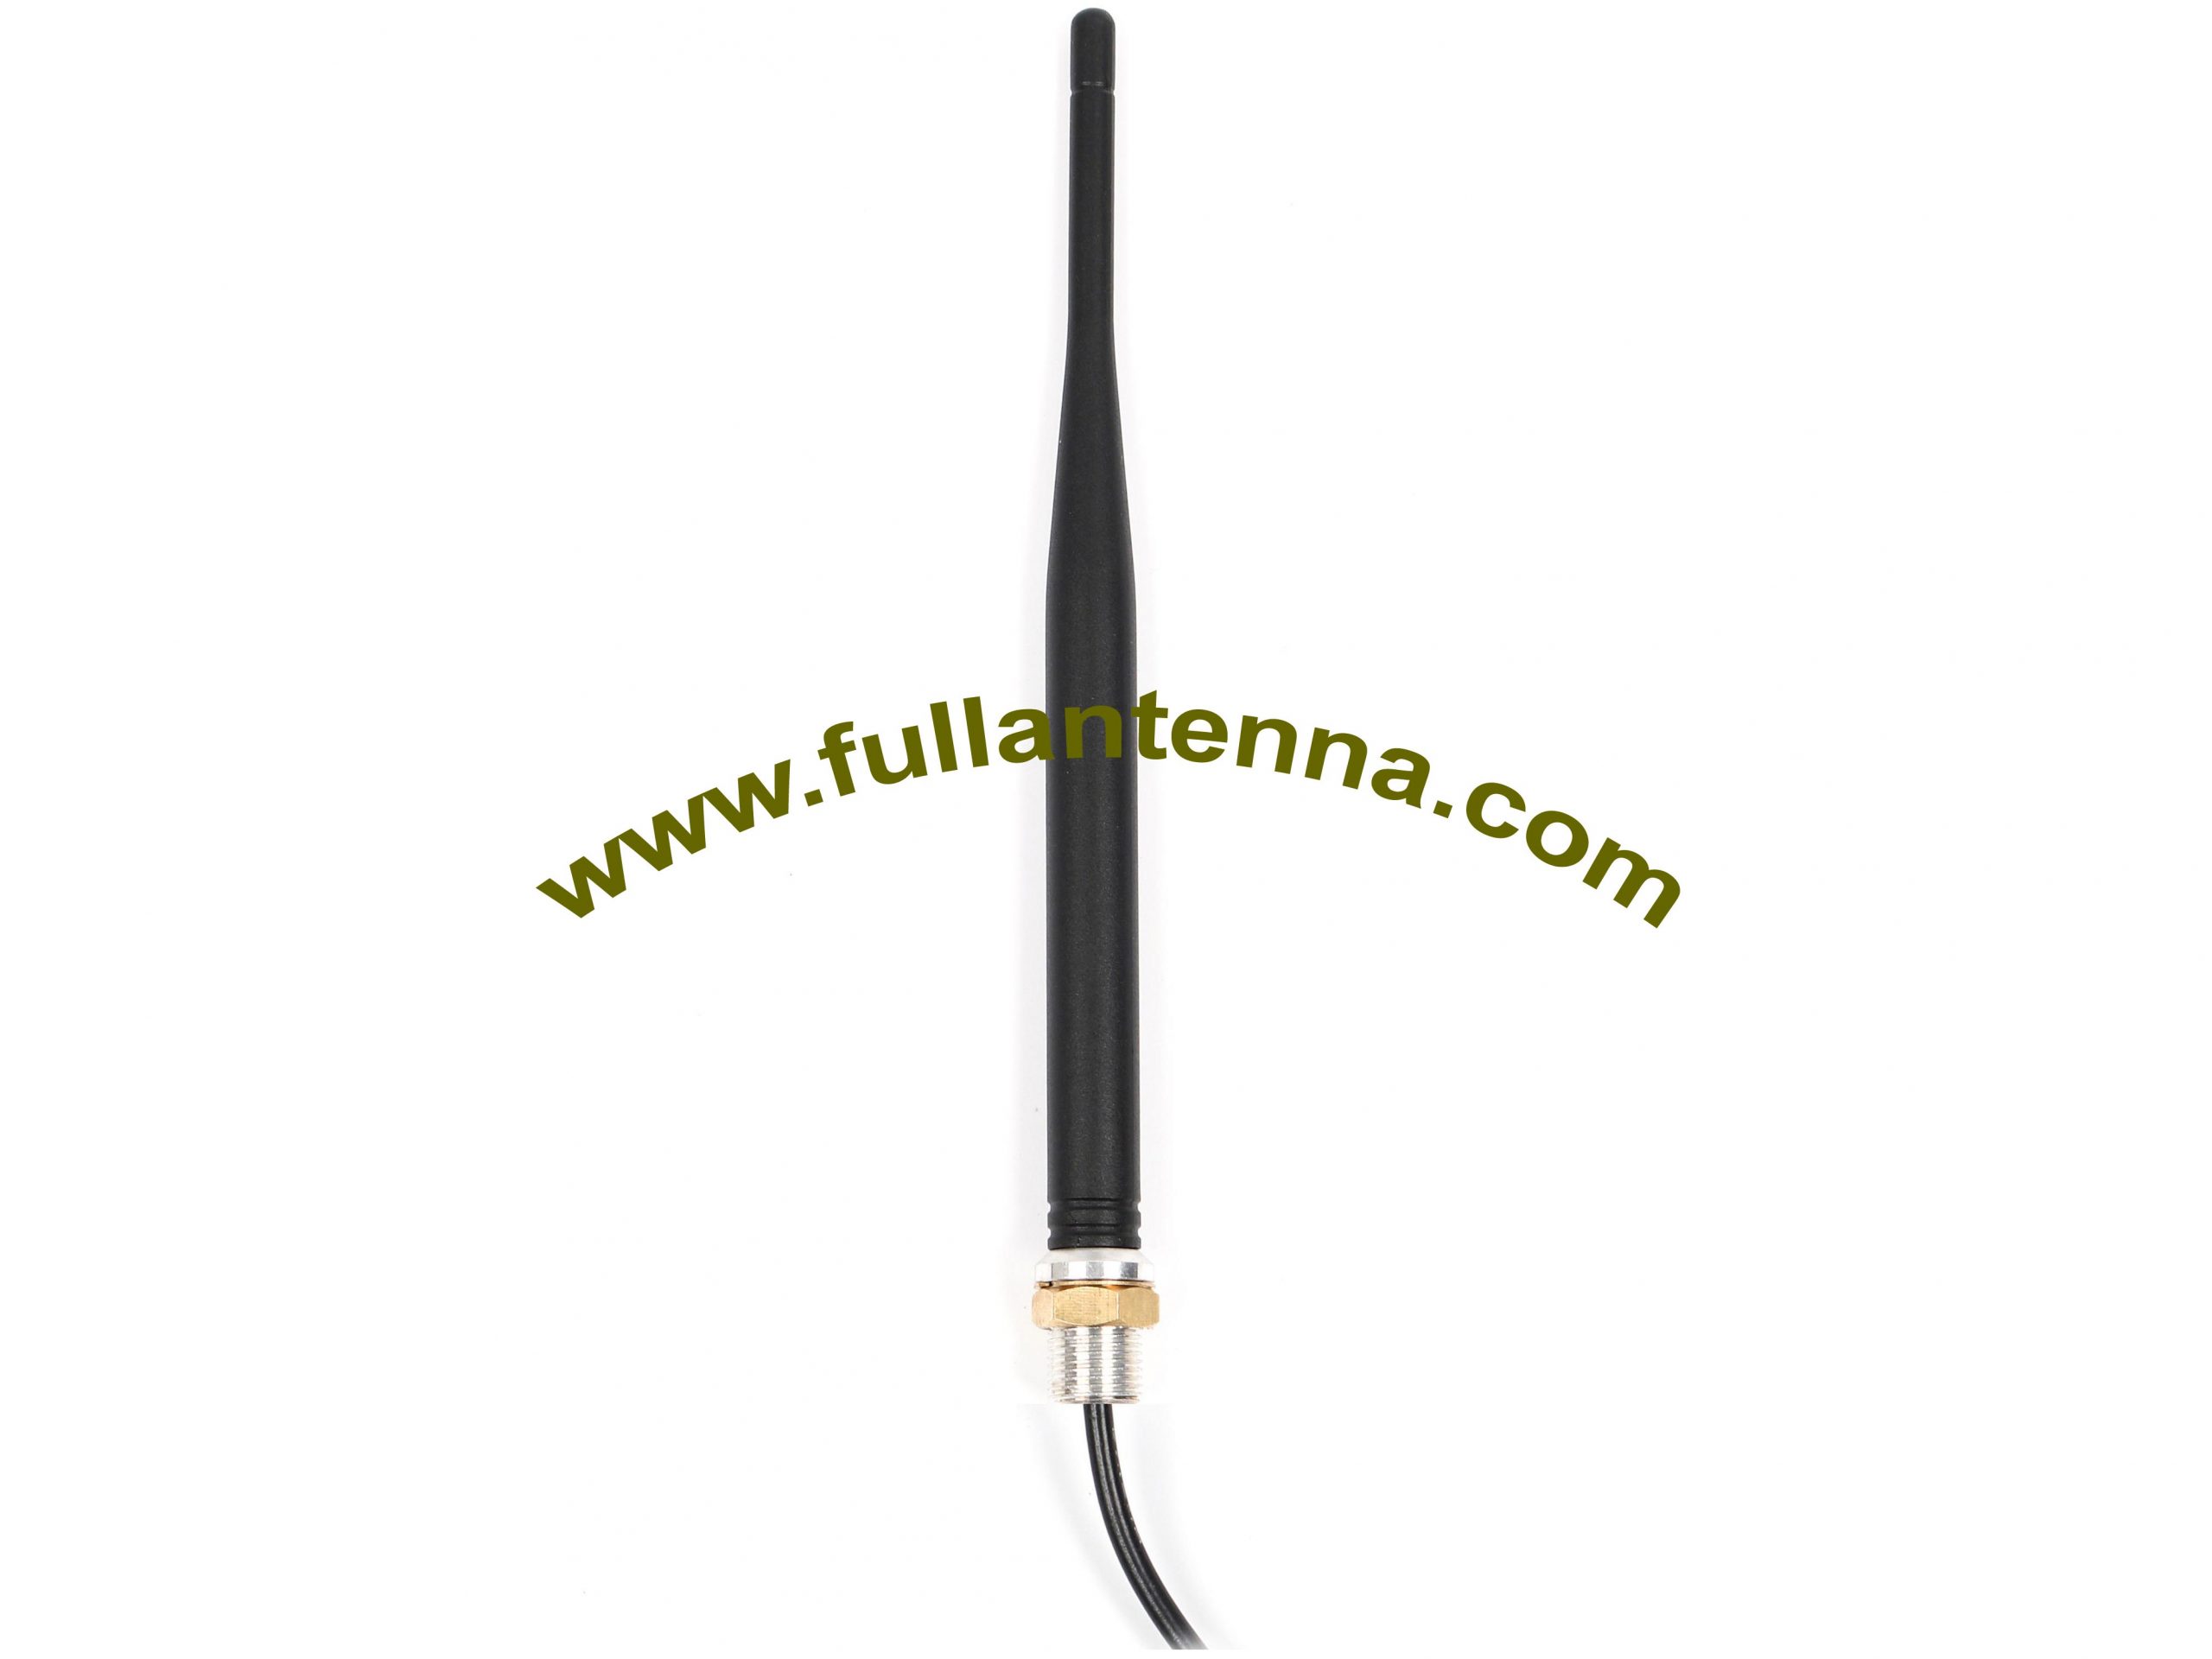 P / N: FAGSM.1101, Antena externa GSM, montaje de tornillo para dispositivo GSM AMPS SMA macho